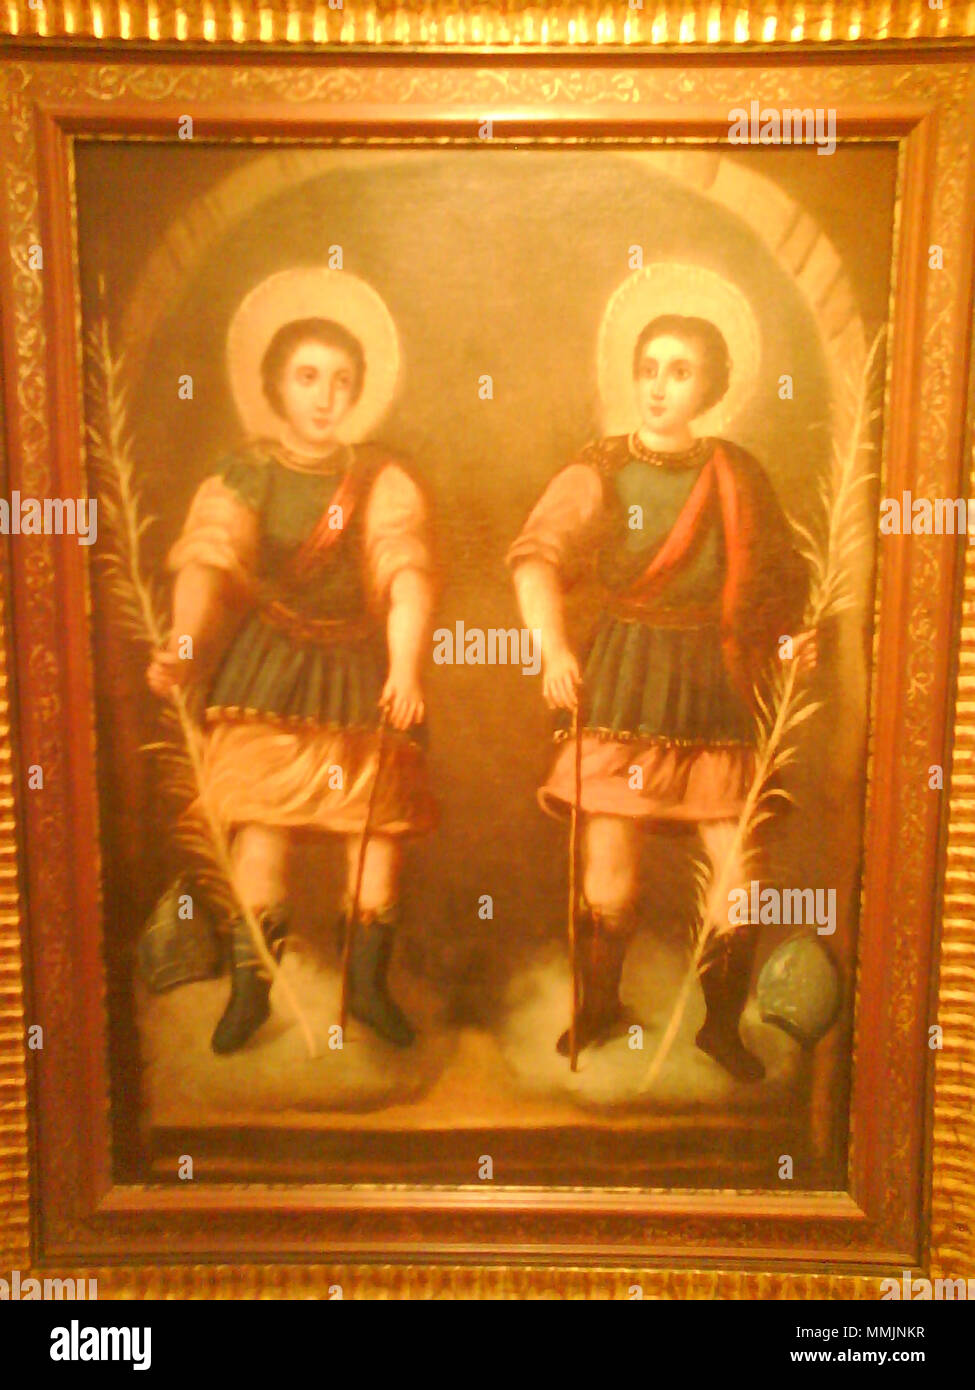 . Anglais : Peinture avec saints Bonosus et Maximianus, légendaire martirs de Arjona, Jaén, Espagne . 18e siècle. Anonyme, 91 BonosMax andalou Banque D'Images